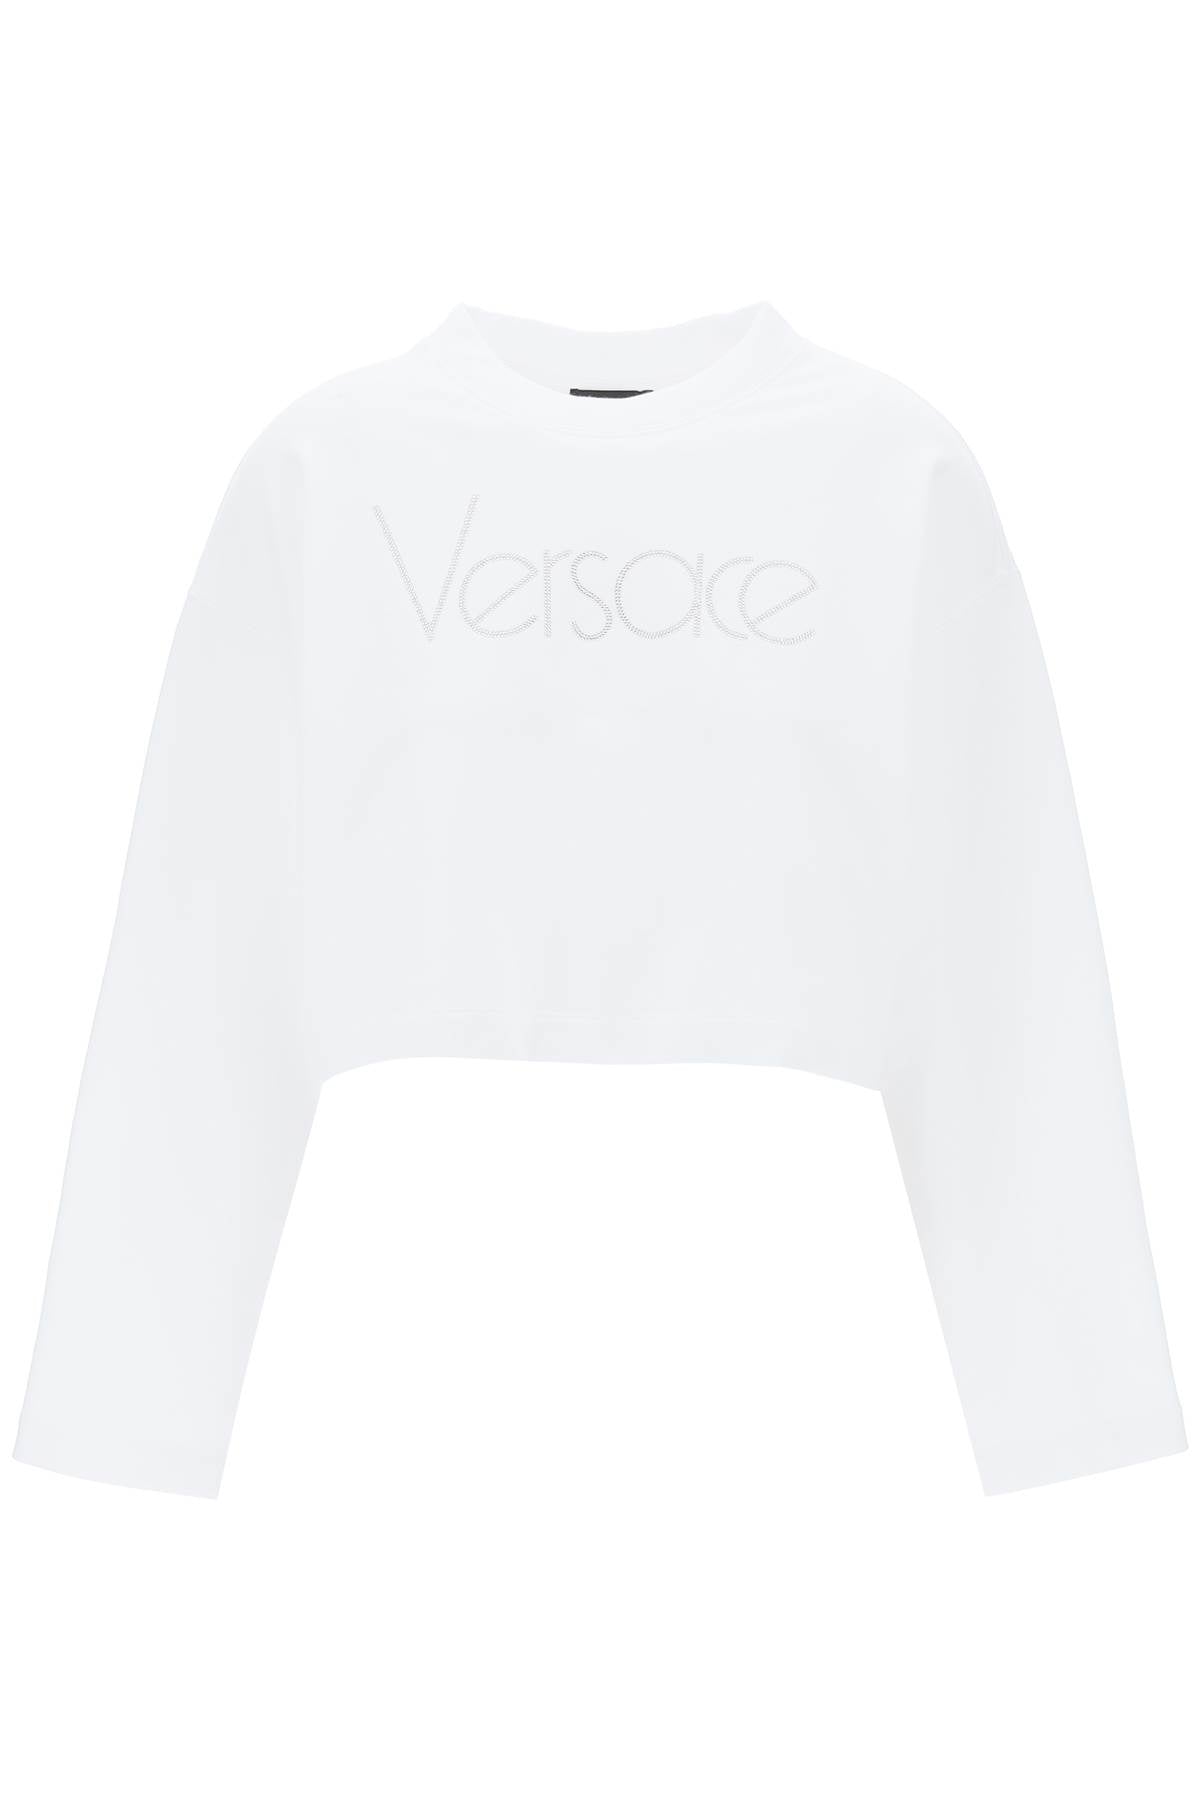 Versace Cropped Sweatshirt With Rhinestone White